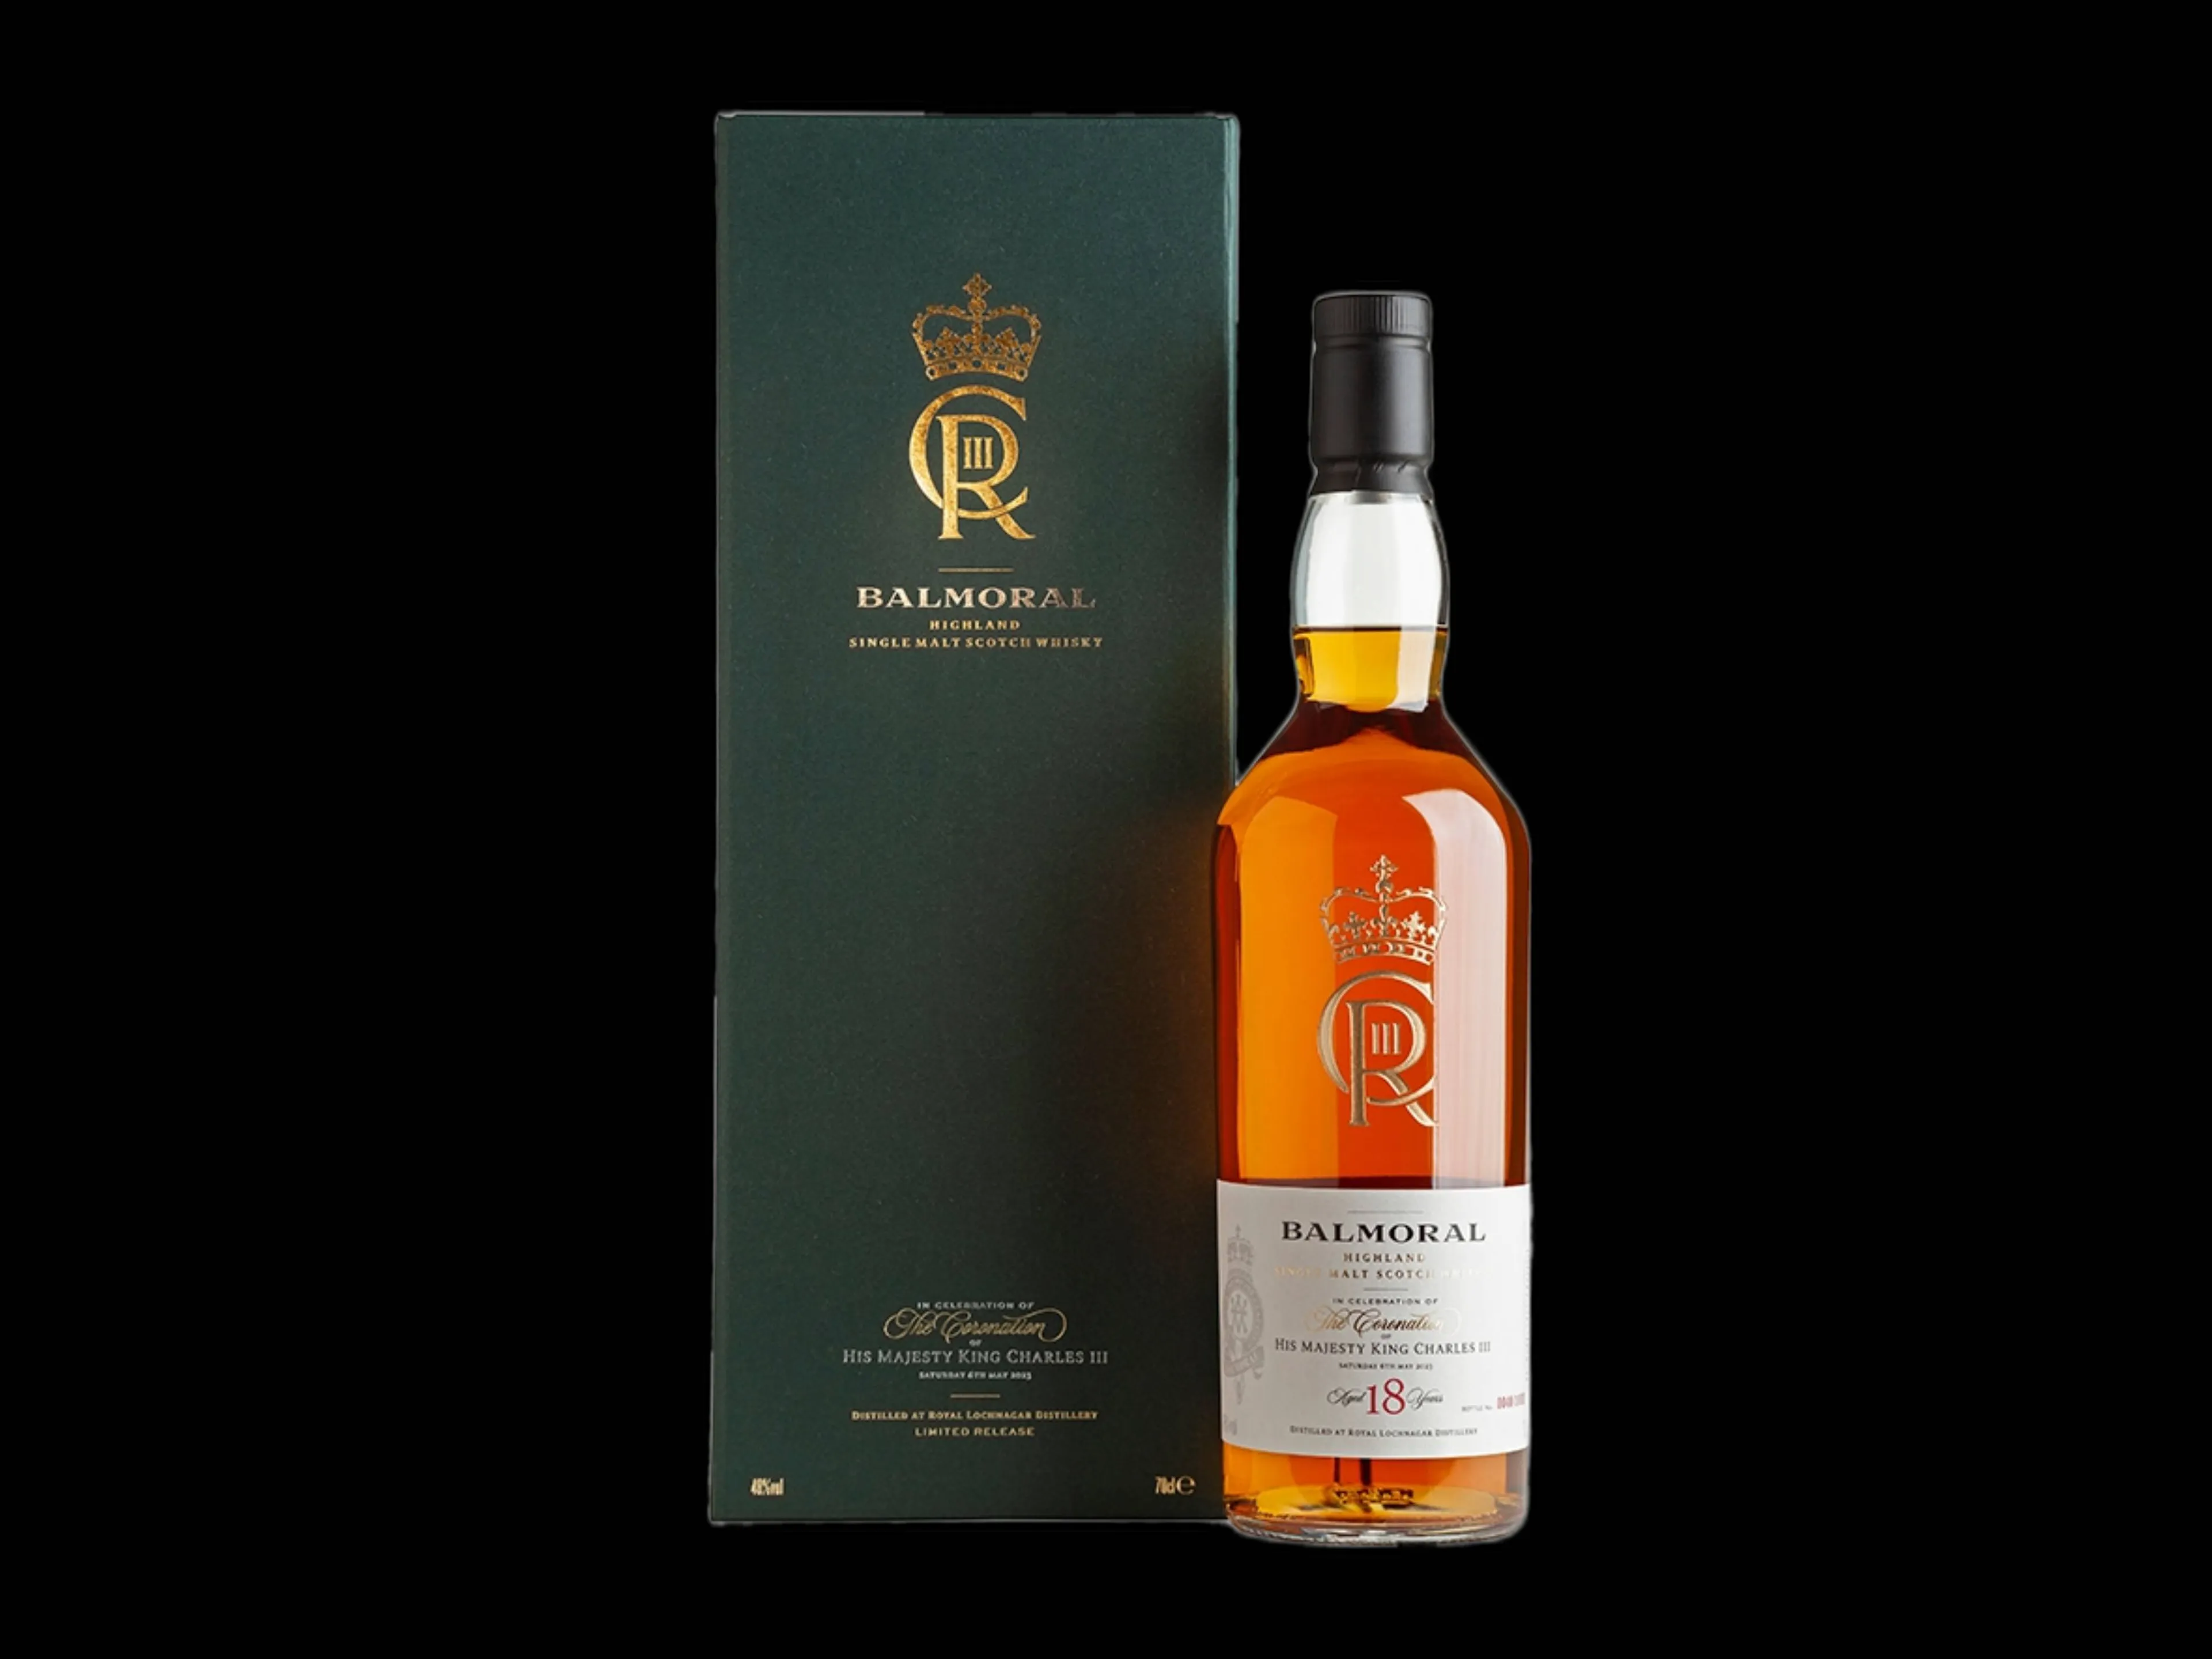 De speciale Balmoral Highland Single Malt Scotch Whisky voor de kroning van Charles III